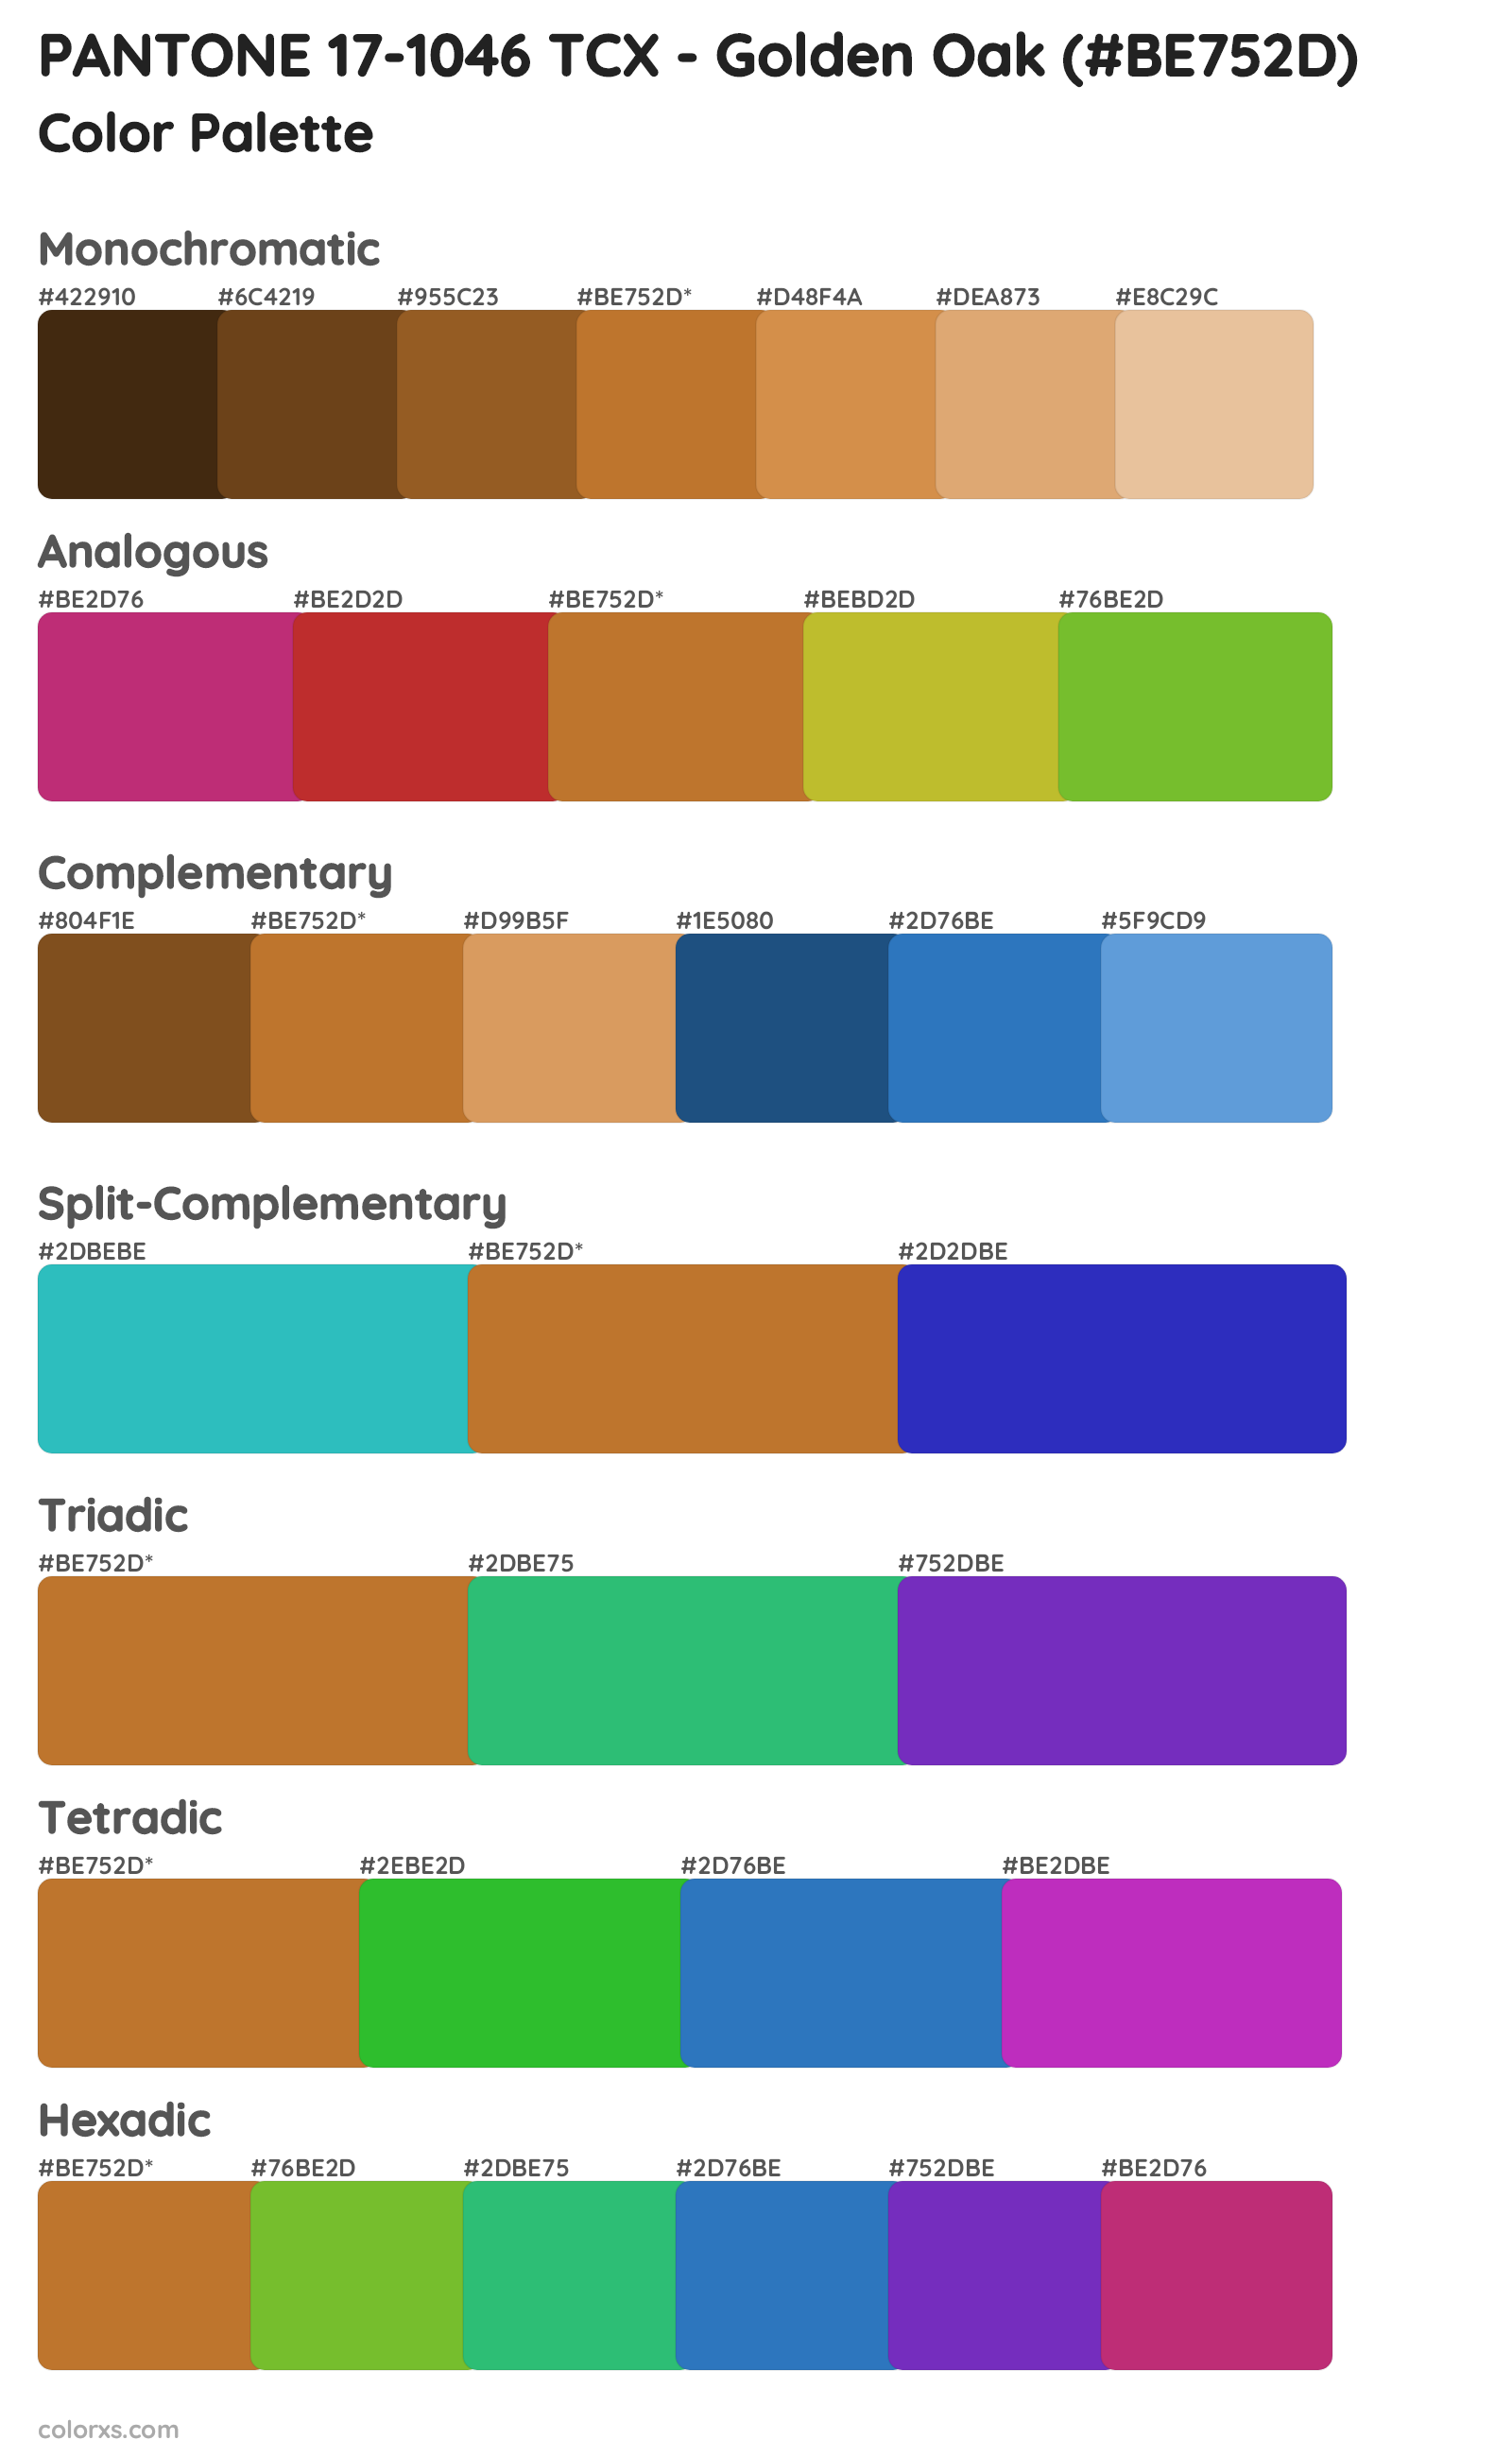 PANTONE 17-1046 TCX - Golden Oak Color Scheme Palettes